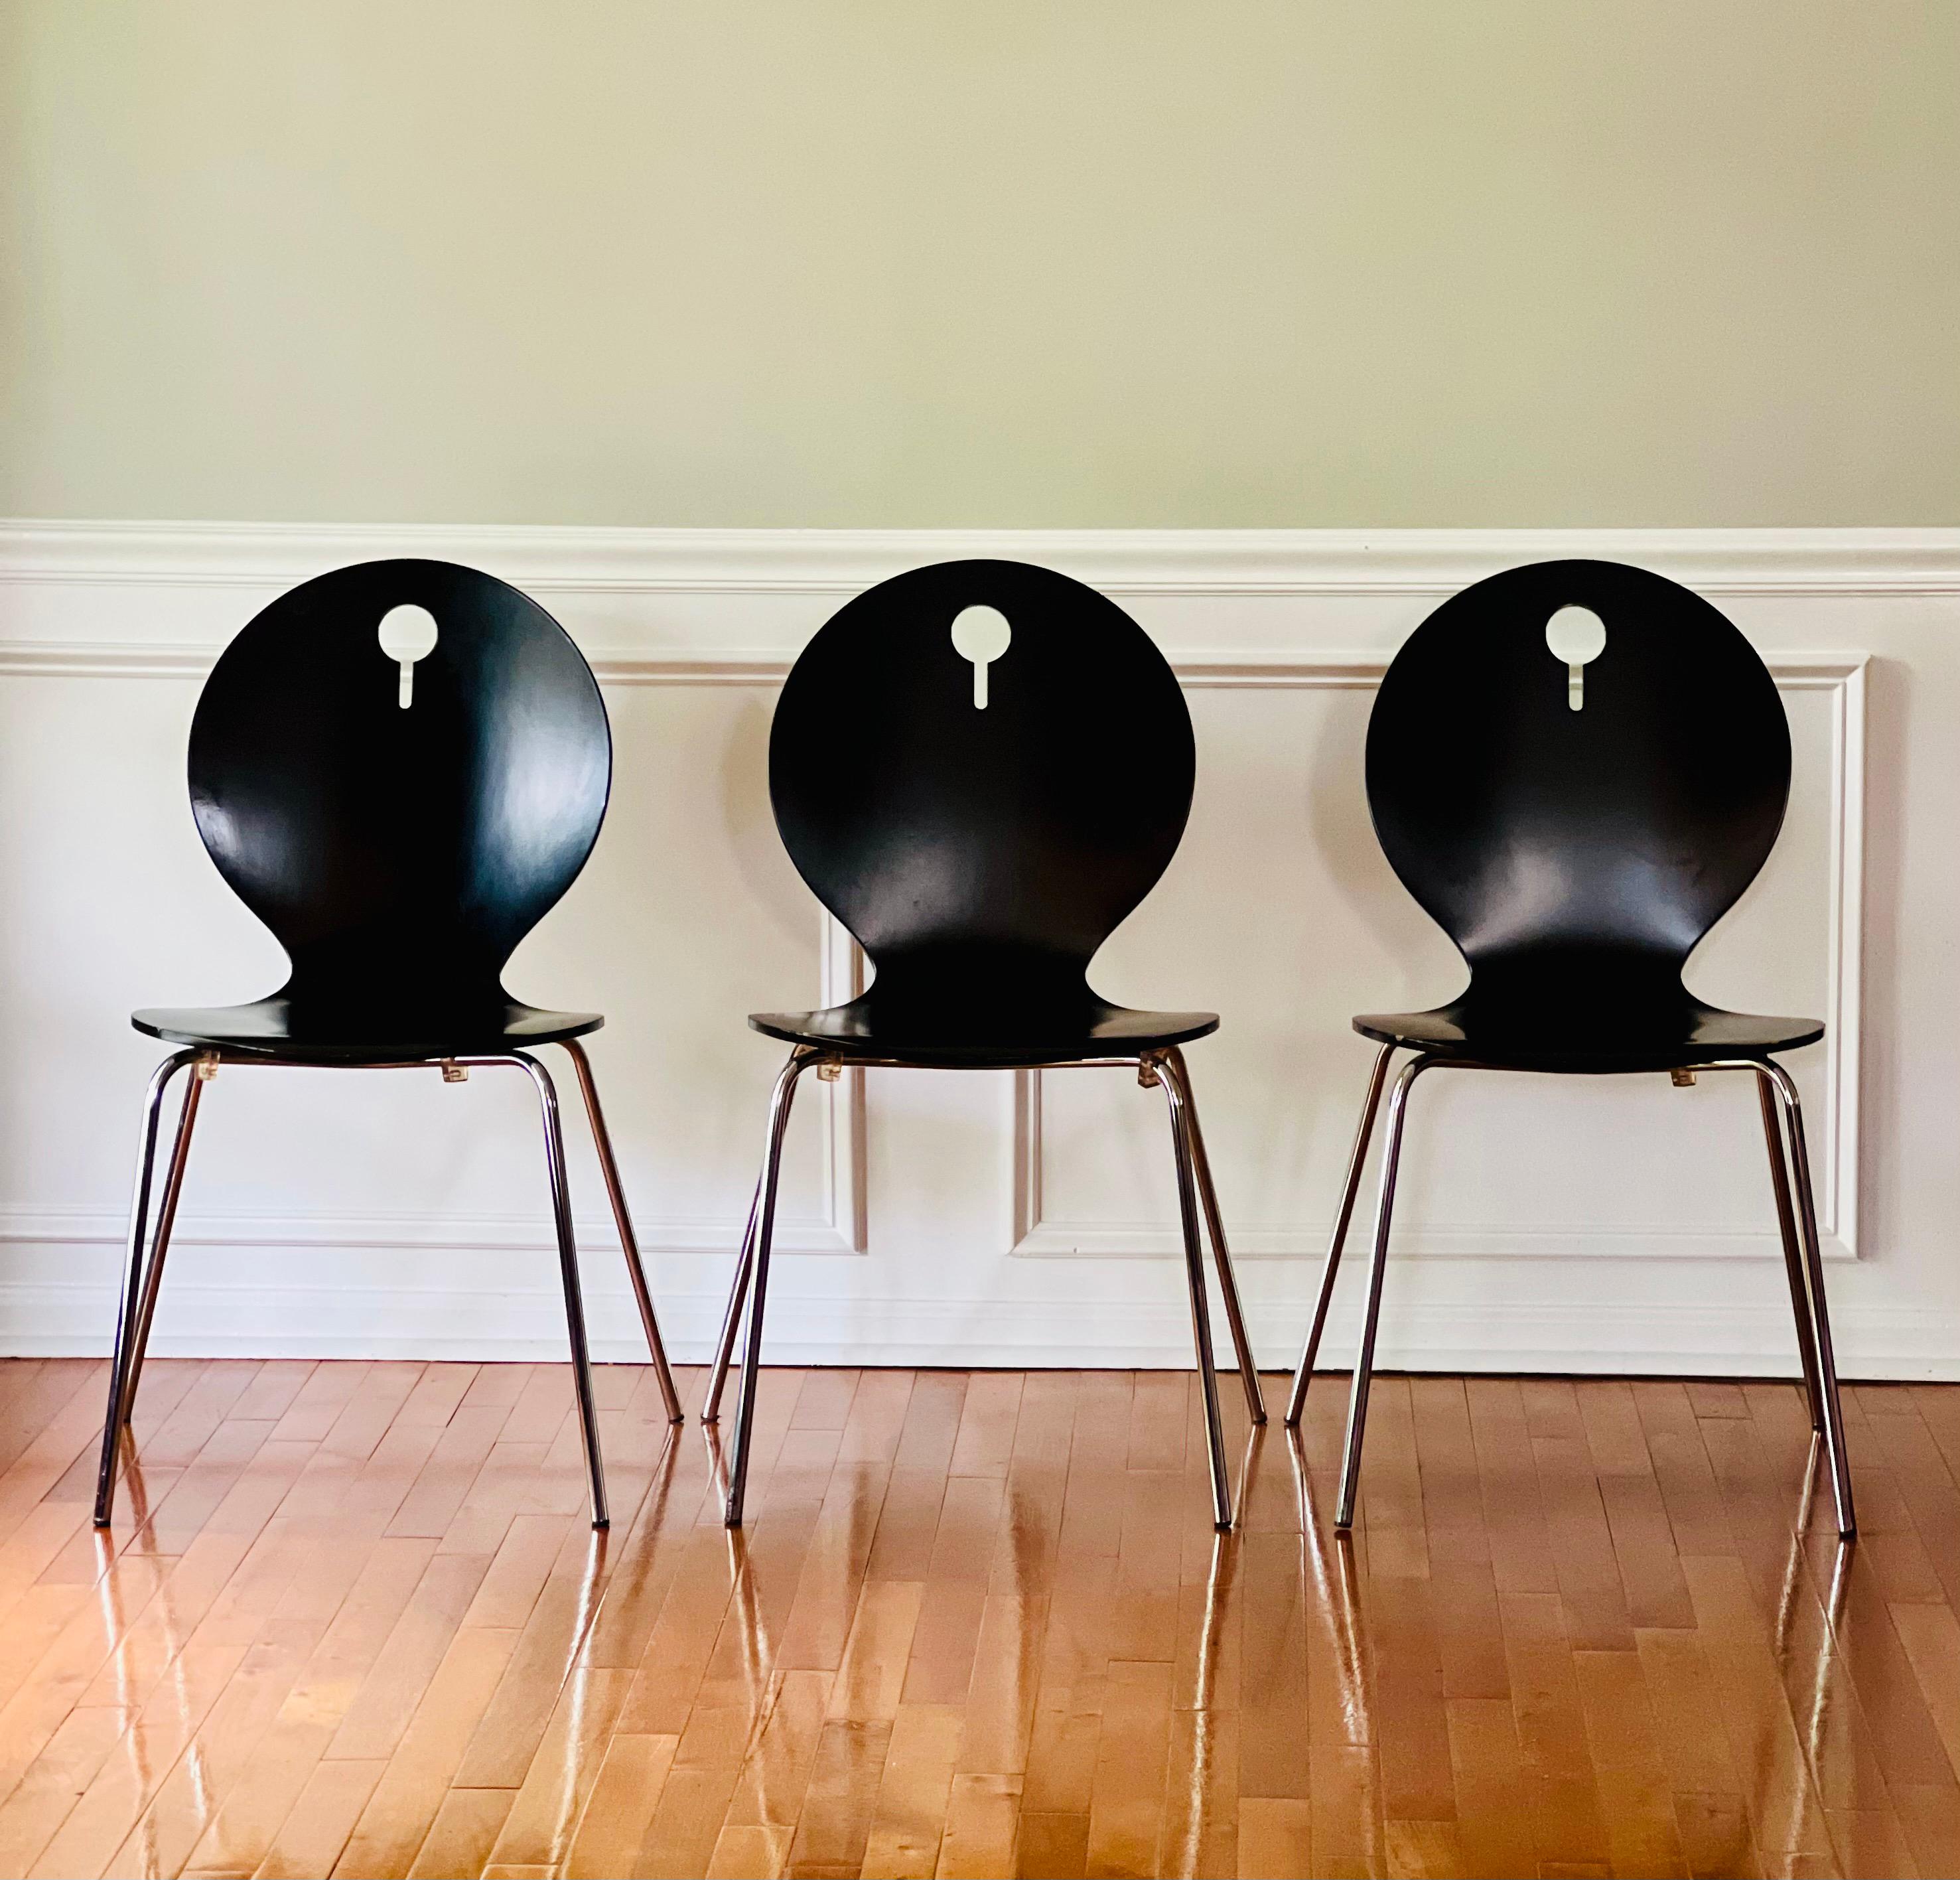 Satz von 4 italienischen modernen stapelbaren Bugholzstühlen von Calligaris, Italien. 

Diese vielseitigen Stühle sind bequem und ergonomisch und haben ein klares, minimalistisches Design. Sie sind mit einem dekorativen Ausschnitt in der Rückenlehne